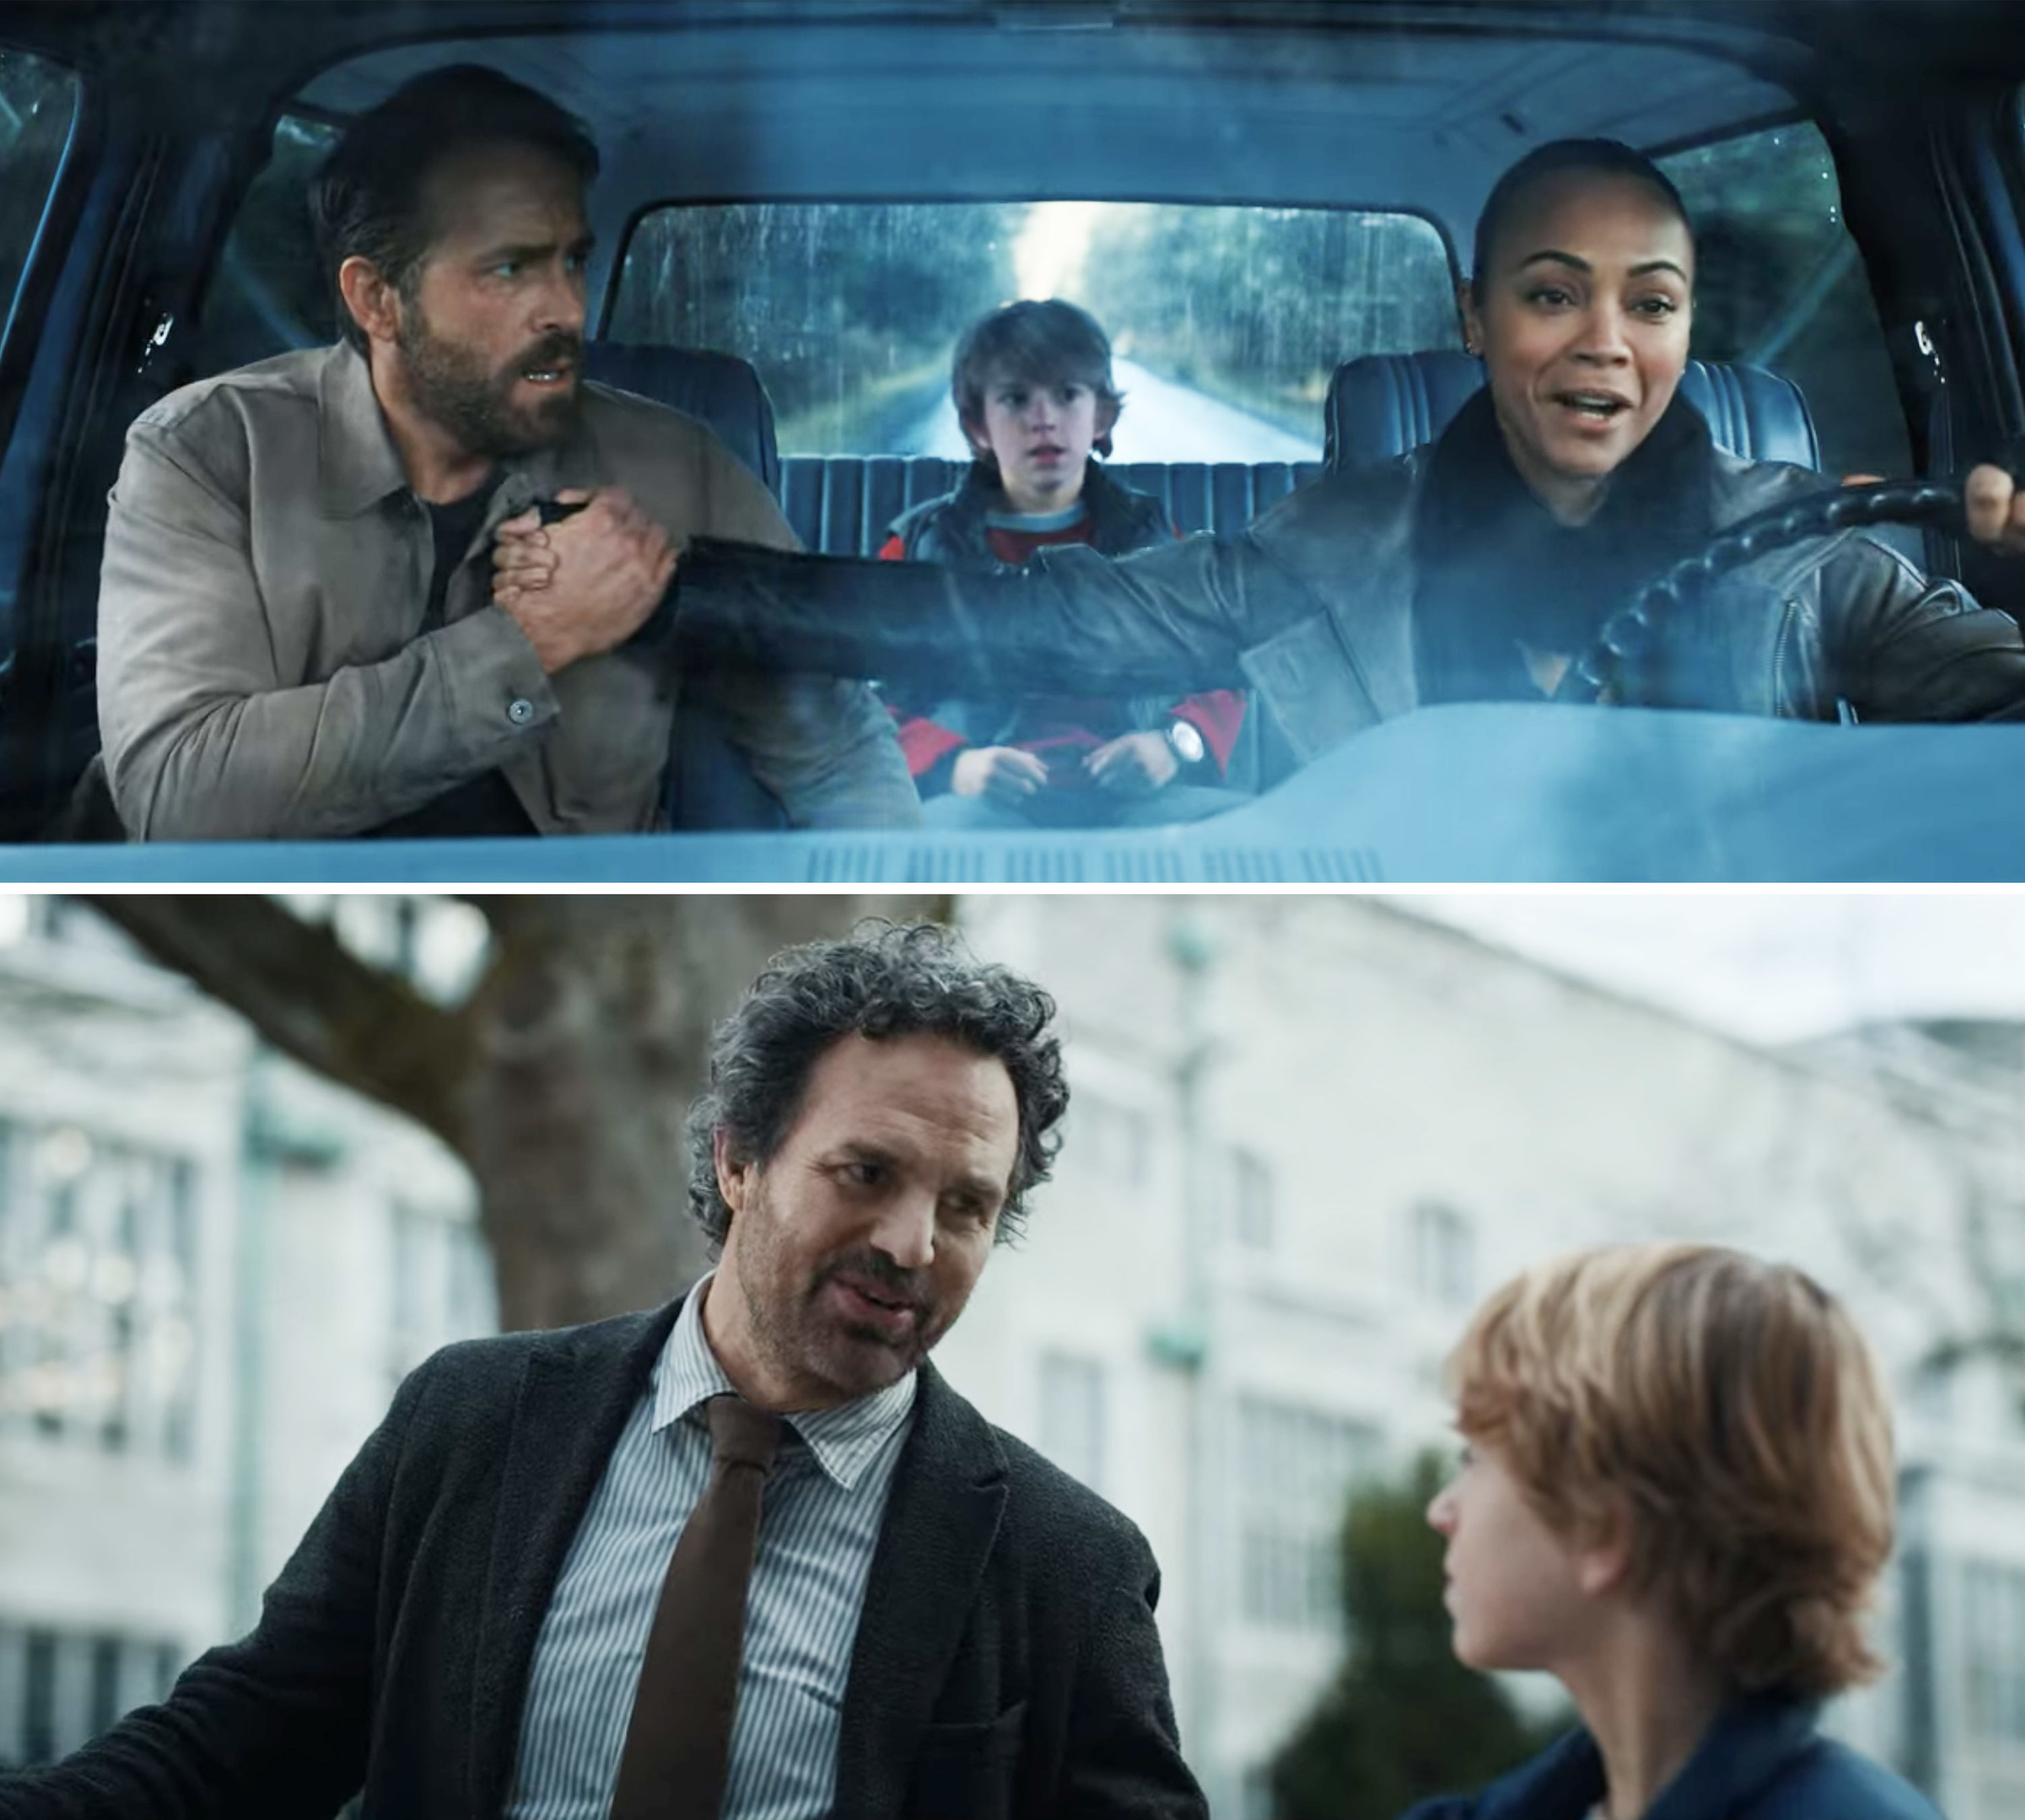 Top: Ryan Reynolds with Zoe Saldana and Walker Scobell in a car; Bottom: Mark Ruffalo talking to Walker Scobell outside